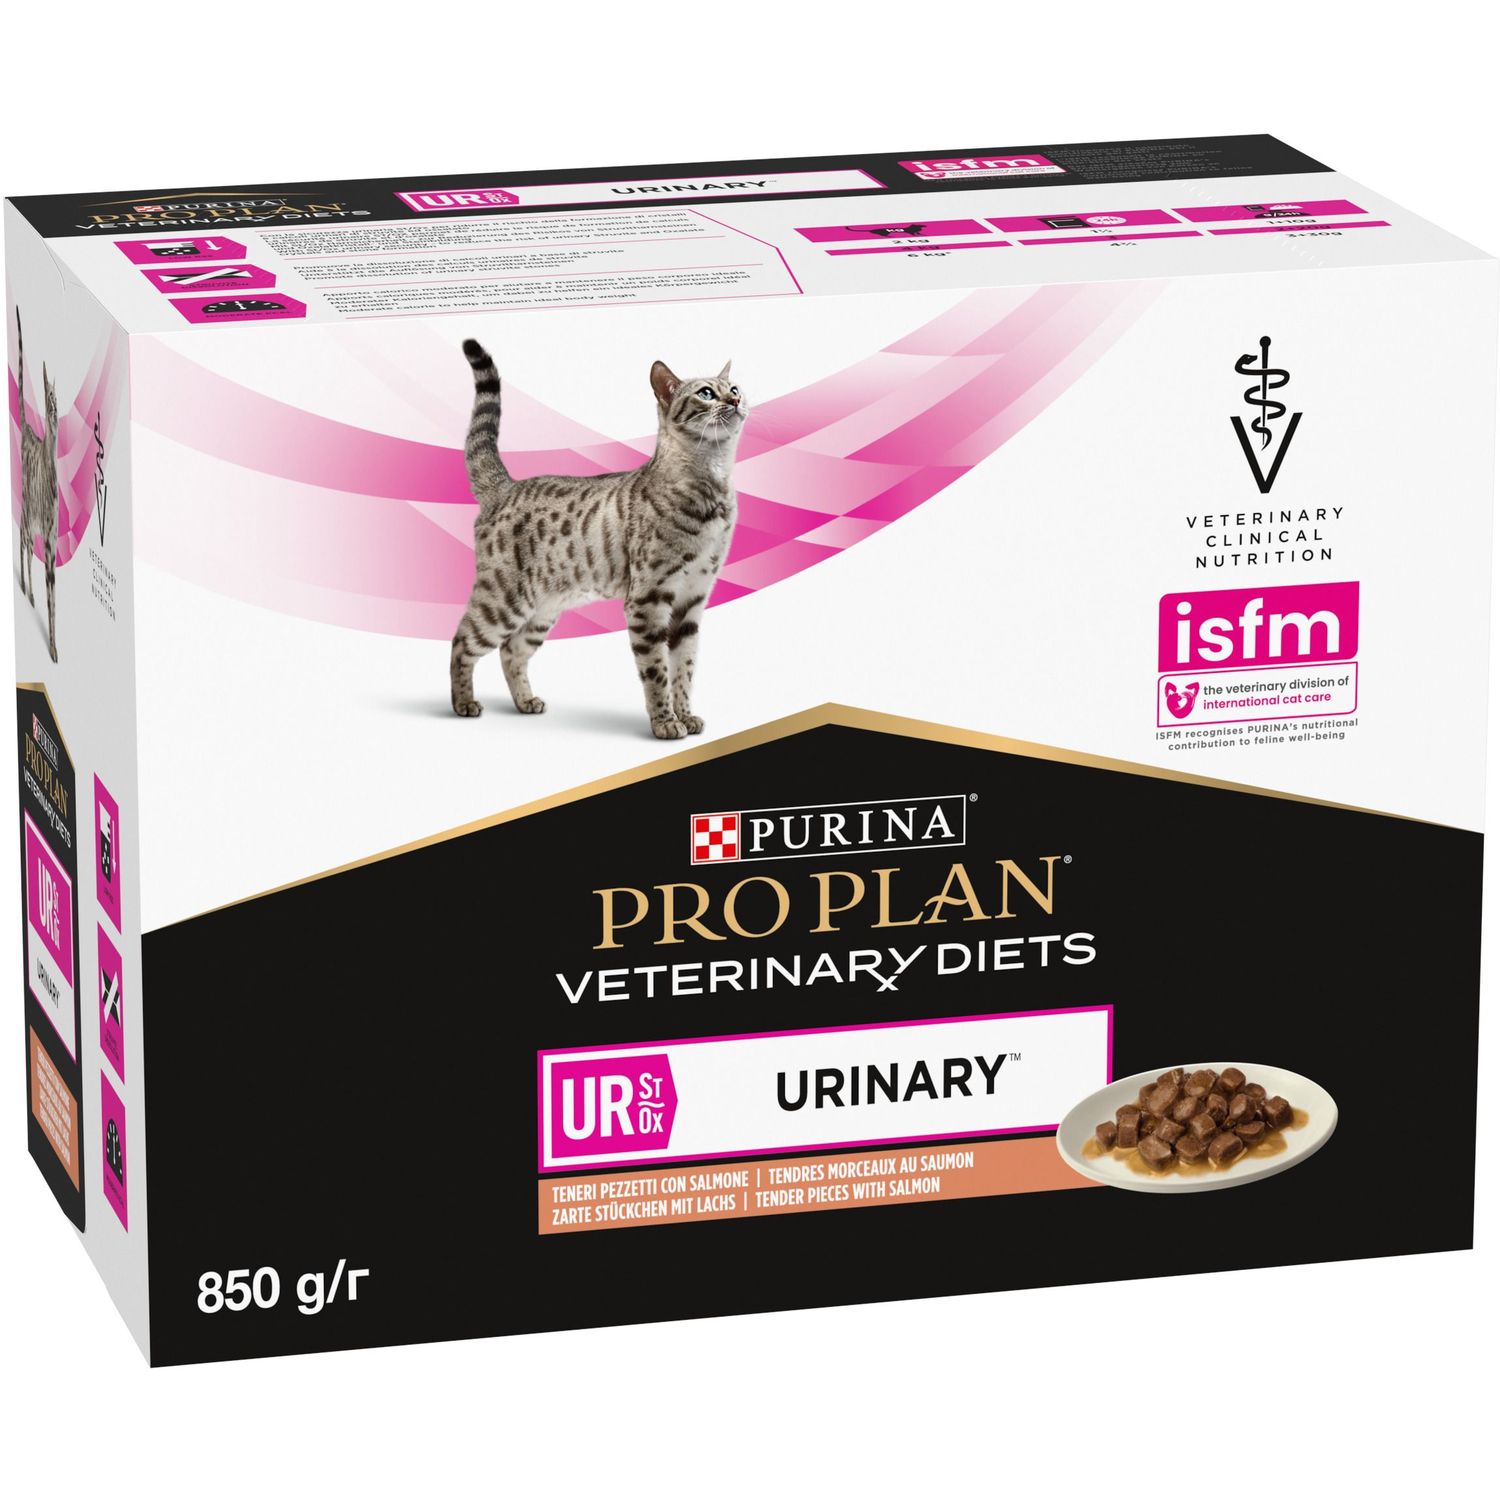 Вологий дієтичний корм для дорослих котів Purina Pro Plan Veterinary Diets UR ST/OX Urinary для розчинення та зниження утворення струвітних каменів з лососем 850 г (10 шт. по 85 г) (12308816) - фото 3